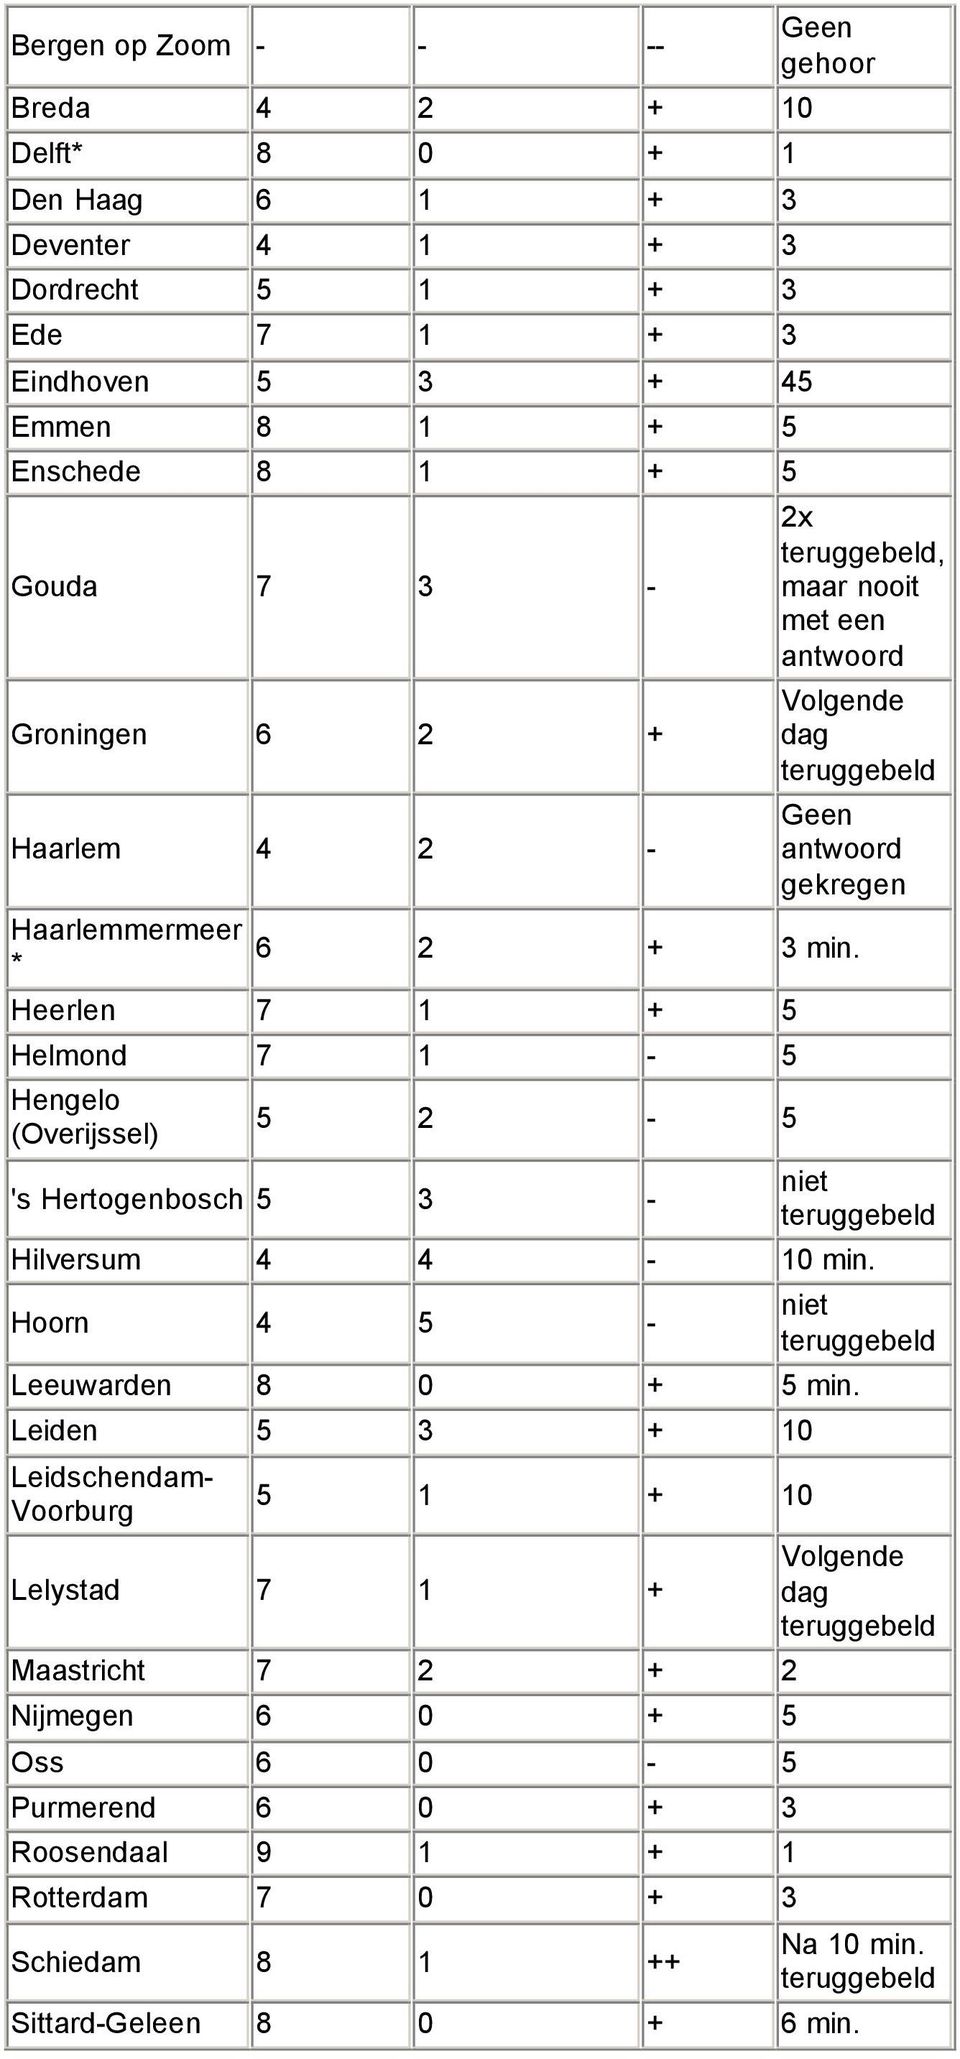 Heerlen 7 1 + 5 Helmond 7 1-5 Hengelo (Overijssel) 5 2-5 's Hertogenbosch 5 3 - niet Hilversum 4 4-10 min. Hoorn 4 5 - niet Leeuwarden 8 0 + 5 min.